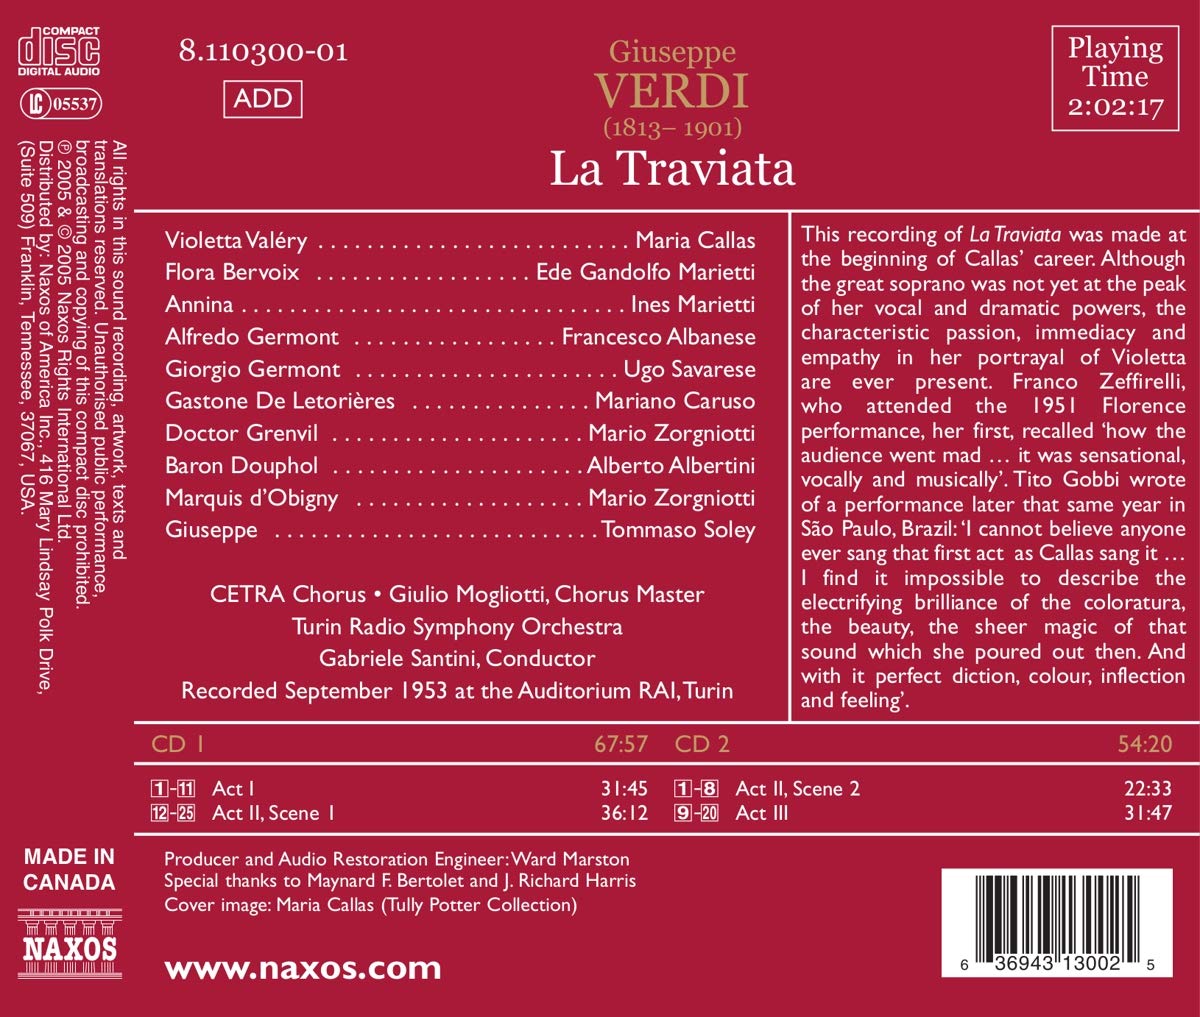 Maria Callas 베르디: 라 트라비아타 (Verdi: La Traviata)